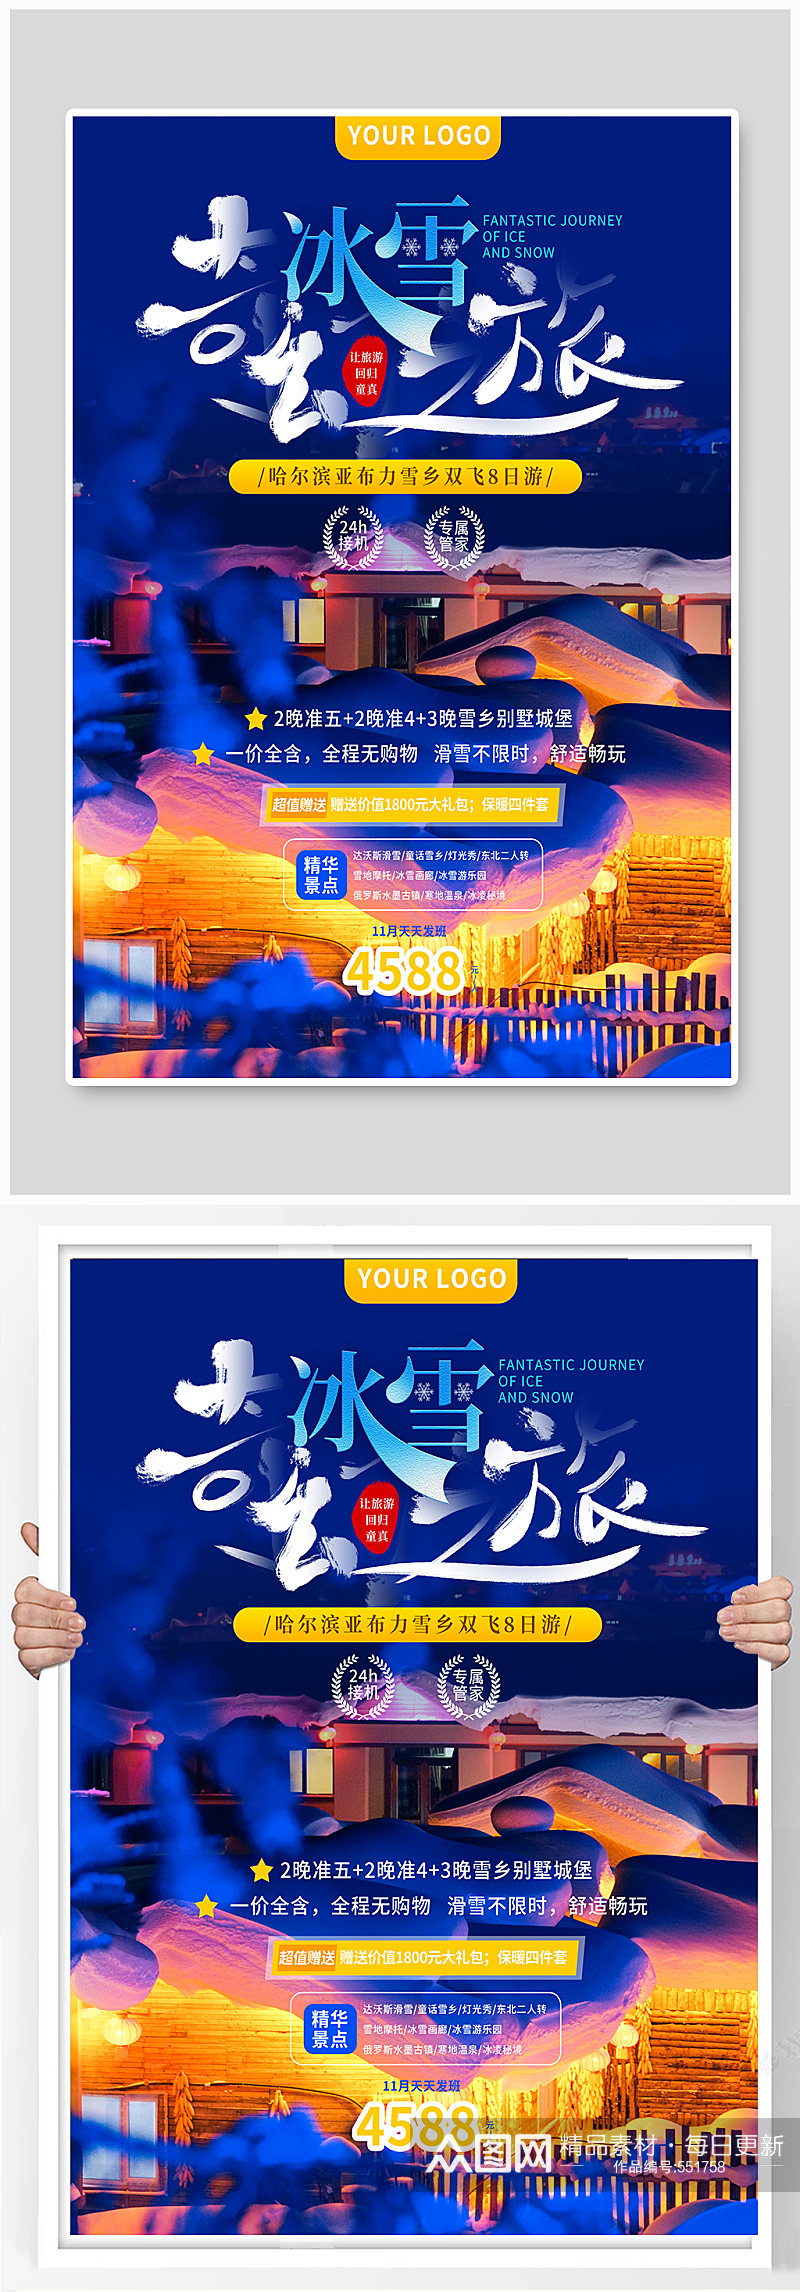 哈尔滨雪乡旅游宣传海报素材